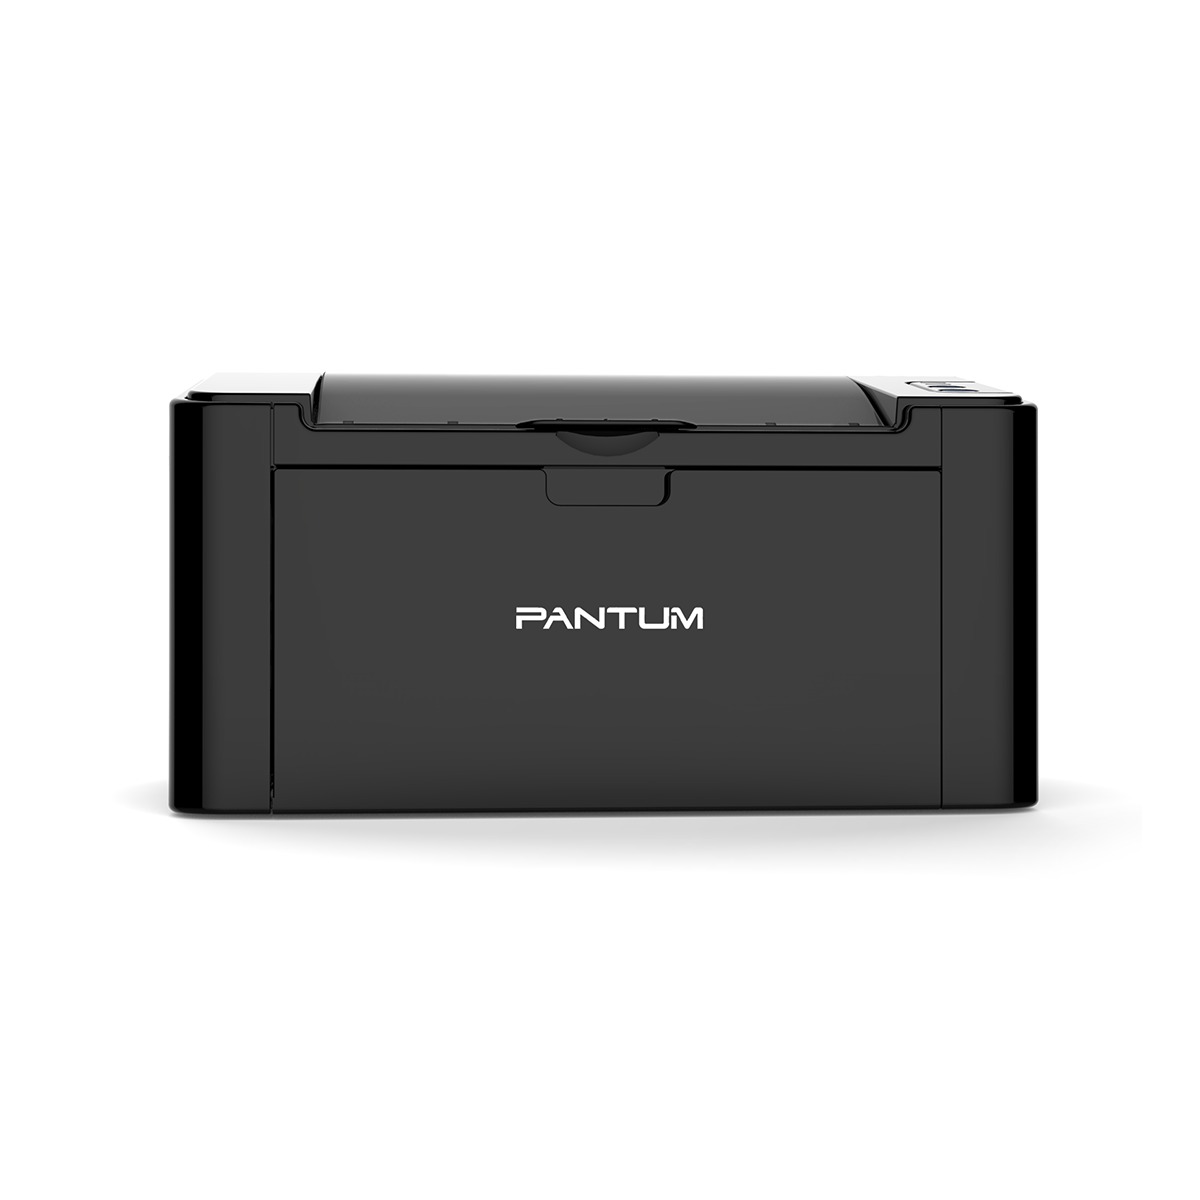 Принтер лазерный Pantum P2500NW, черно-белая печать, 22 стр/мин, 1200x1200 dpi, 128Мб RAM, USB, Wi-Fi, Ethernet